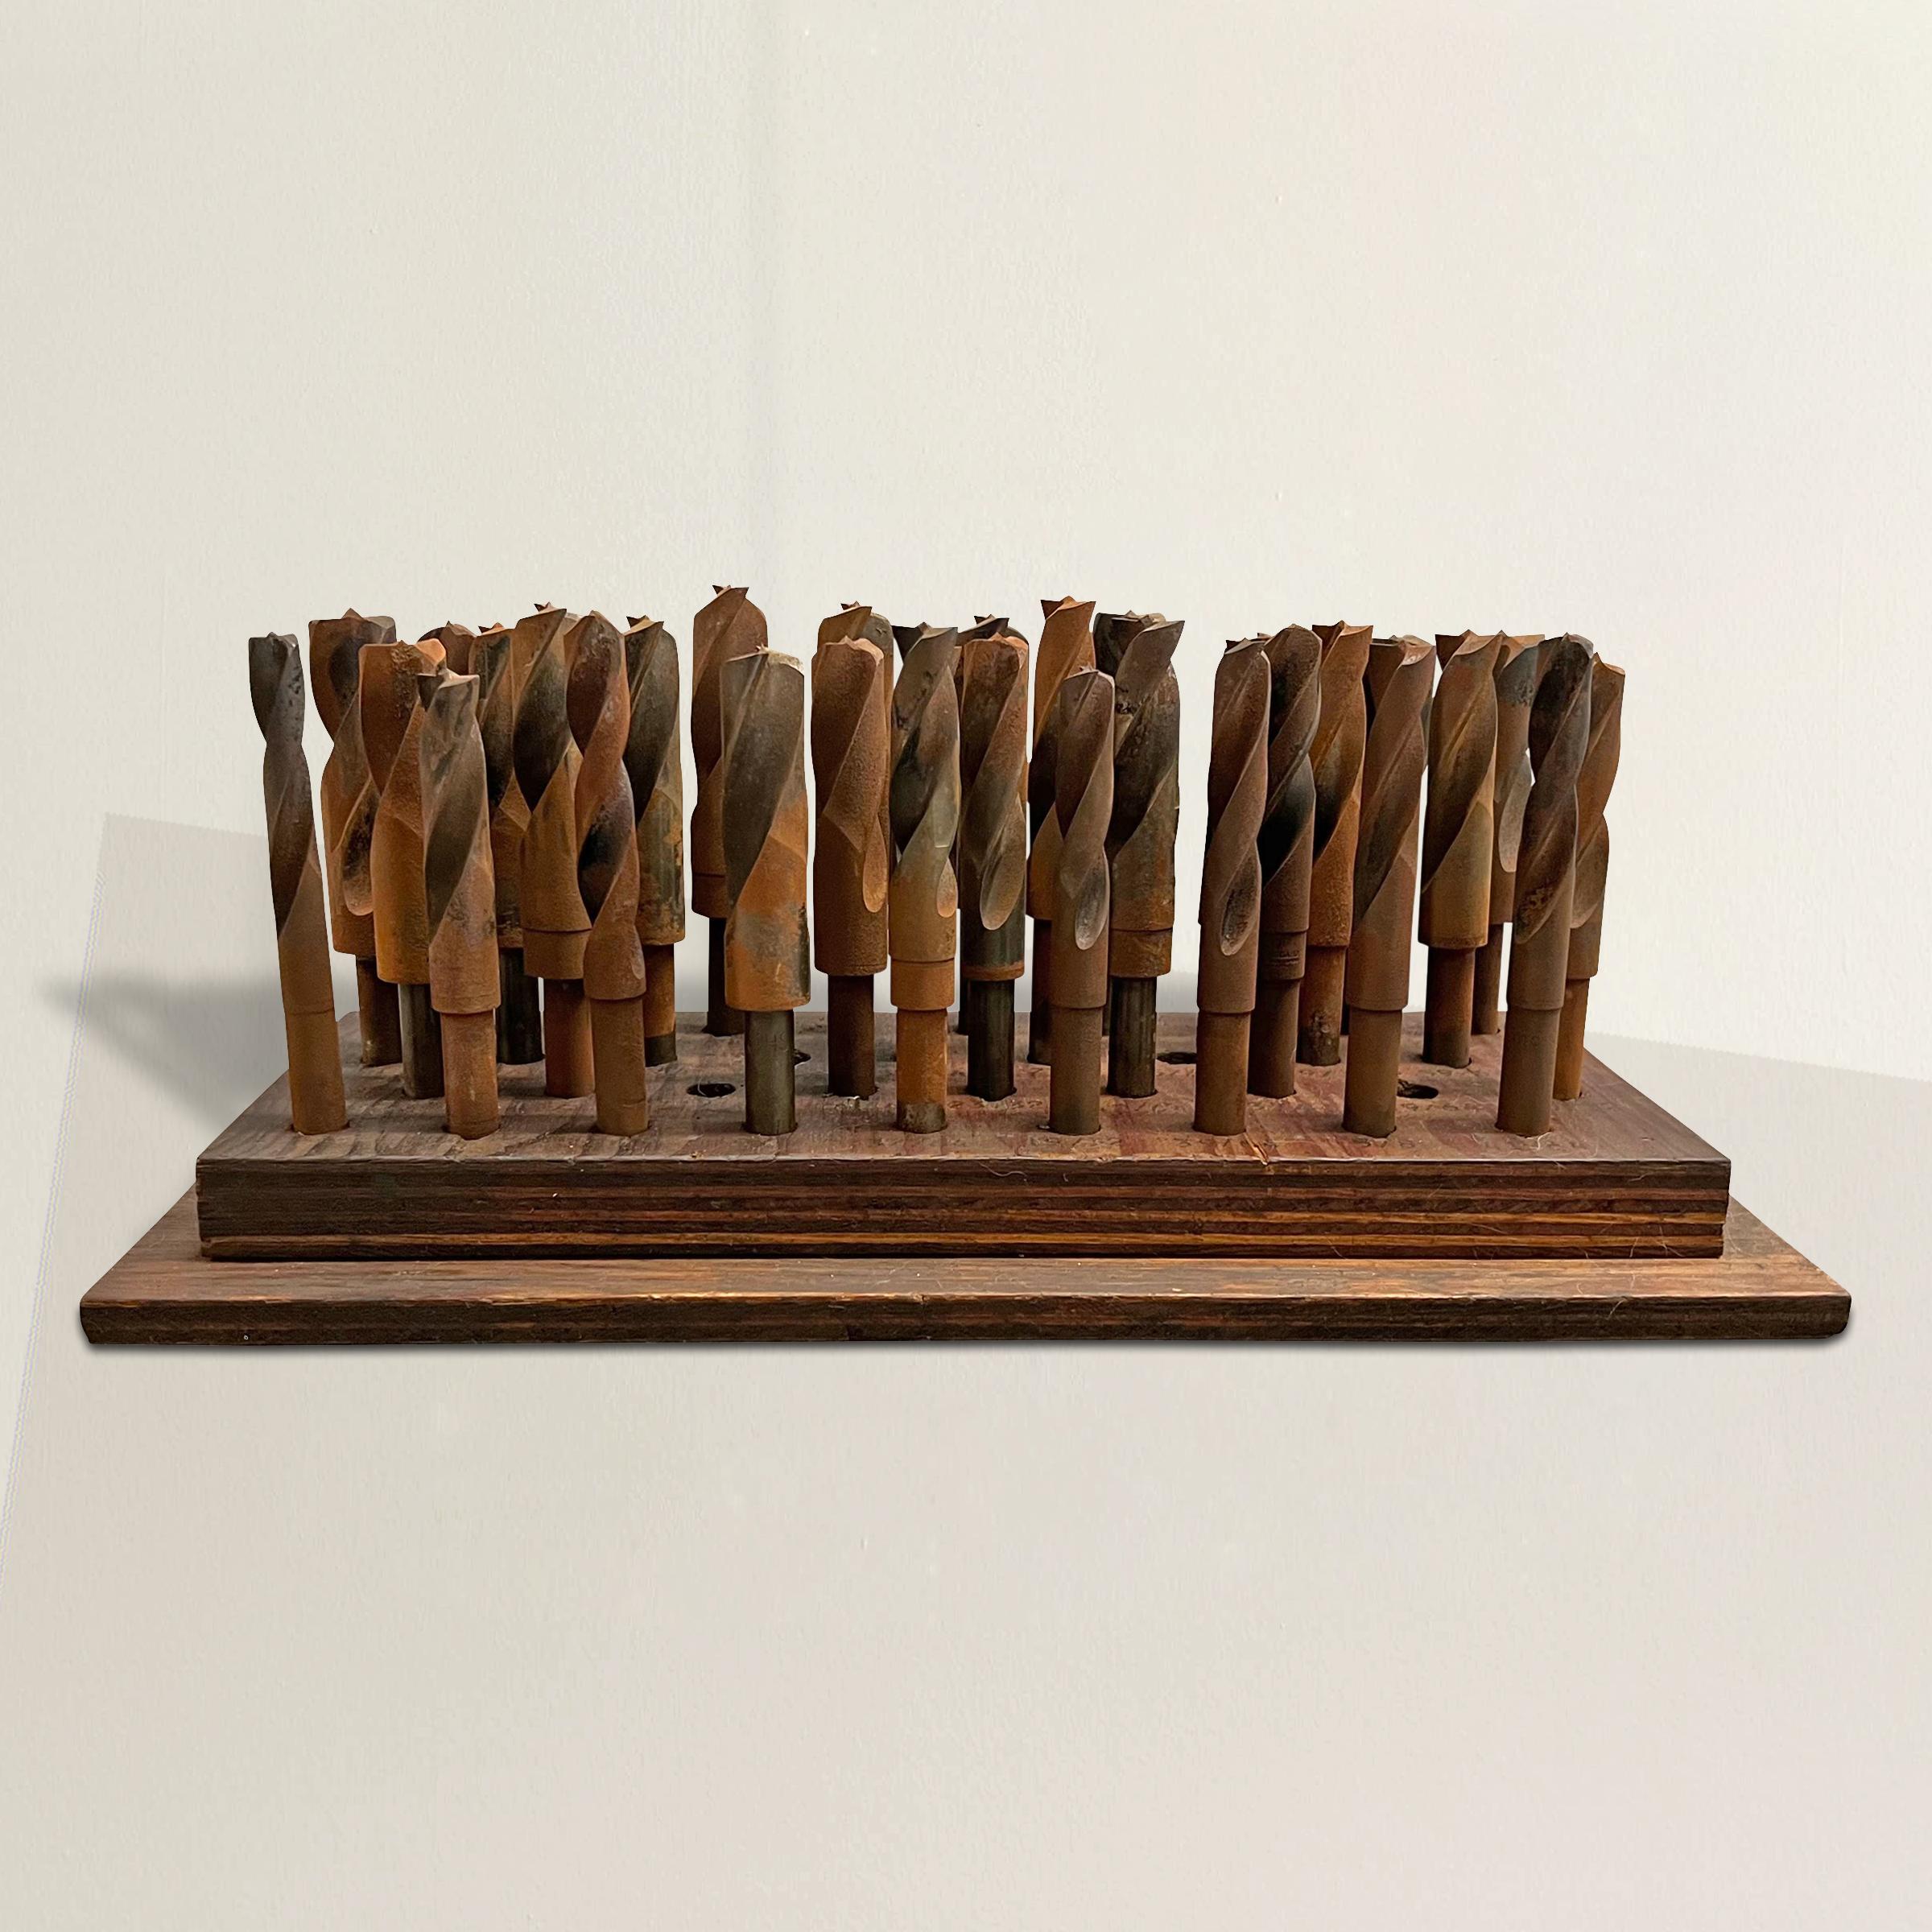 Un jeu américain du début du 20e siècle merveilleusement sculptural de 32 grandes mèches en acier montées sur une base en bois, utilisé à l'origine dans un atelier, mais apporté à la maison, devient une sculpture moderniste qui tient sa place parmi